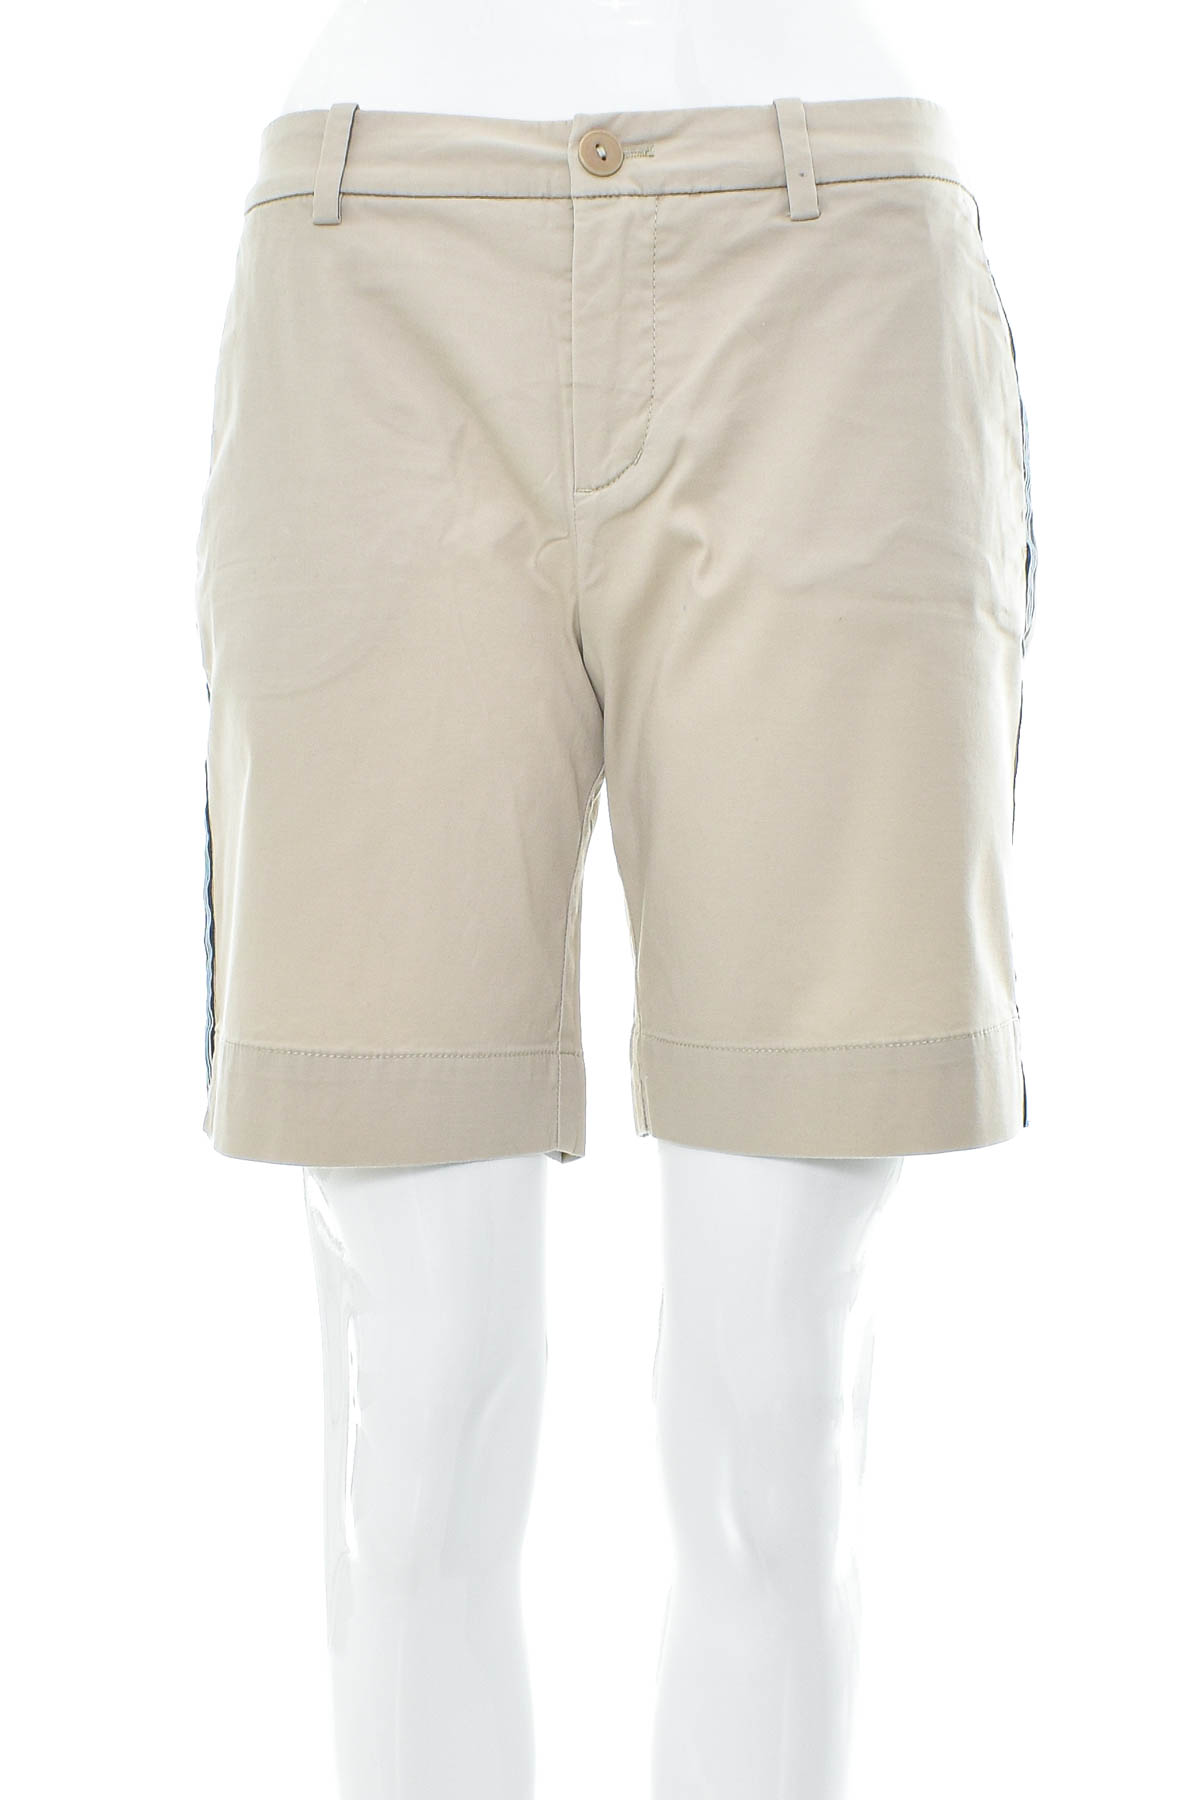 Female shorts - Marc O' Polo - 0